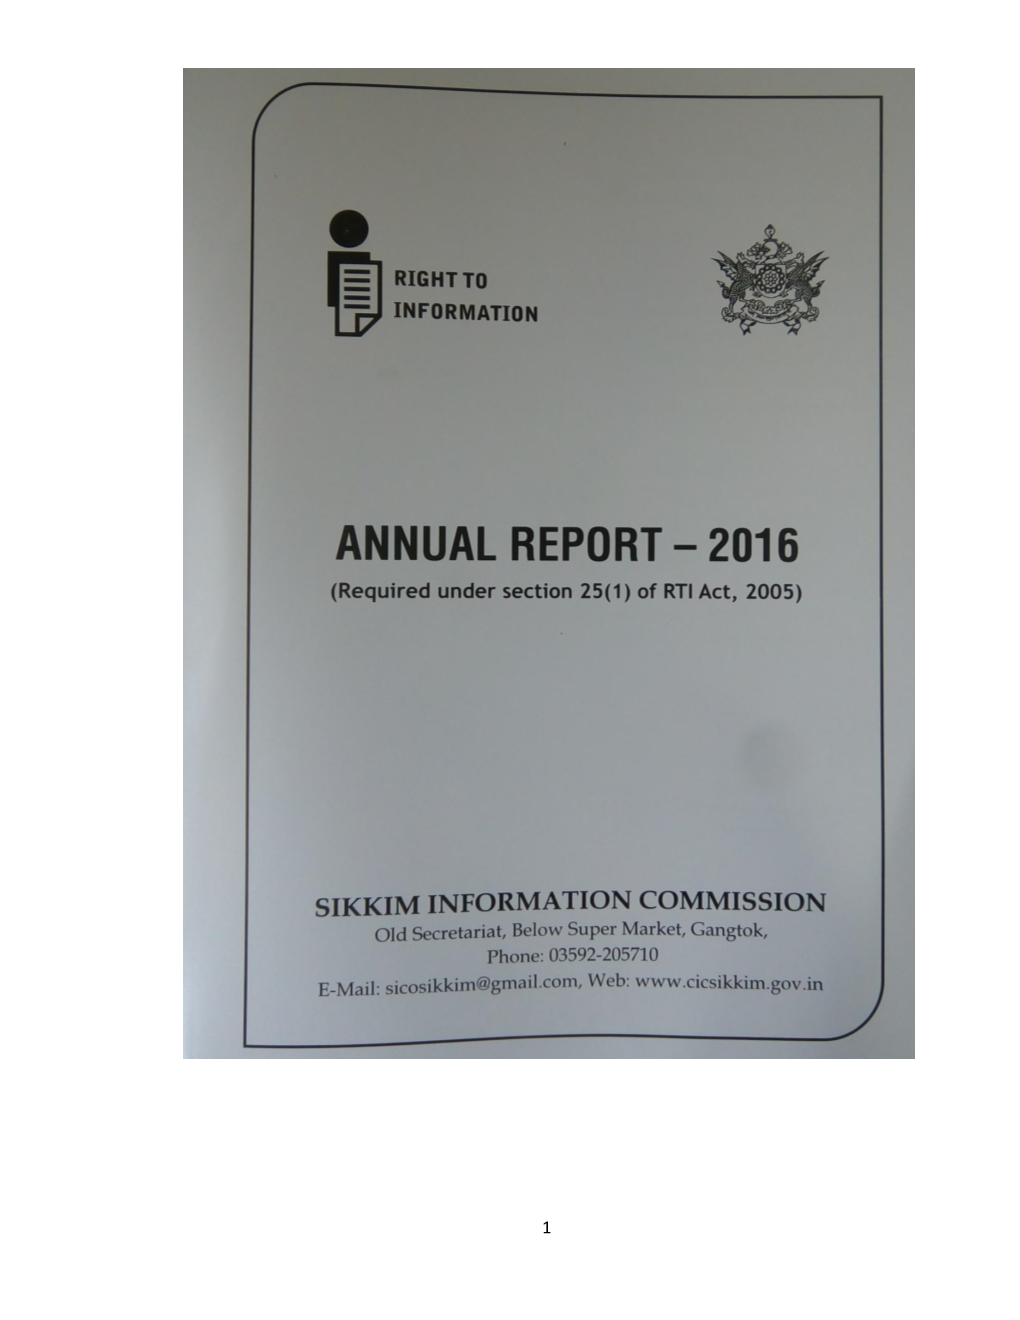 Annual Report-2016 20210423.Pdf